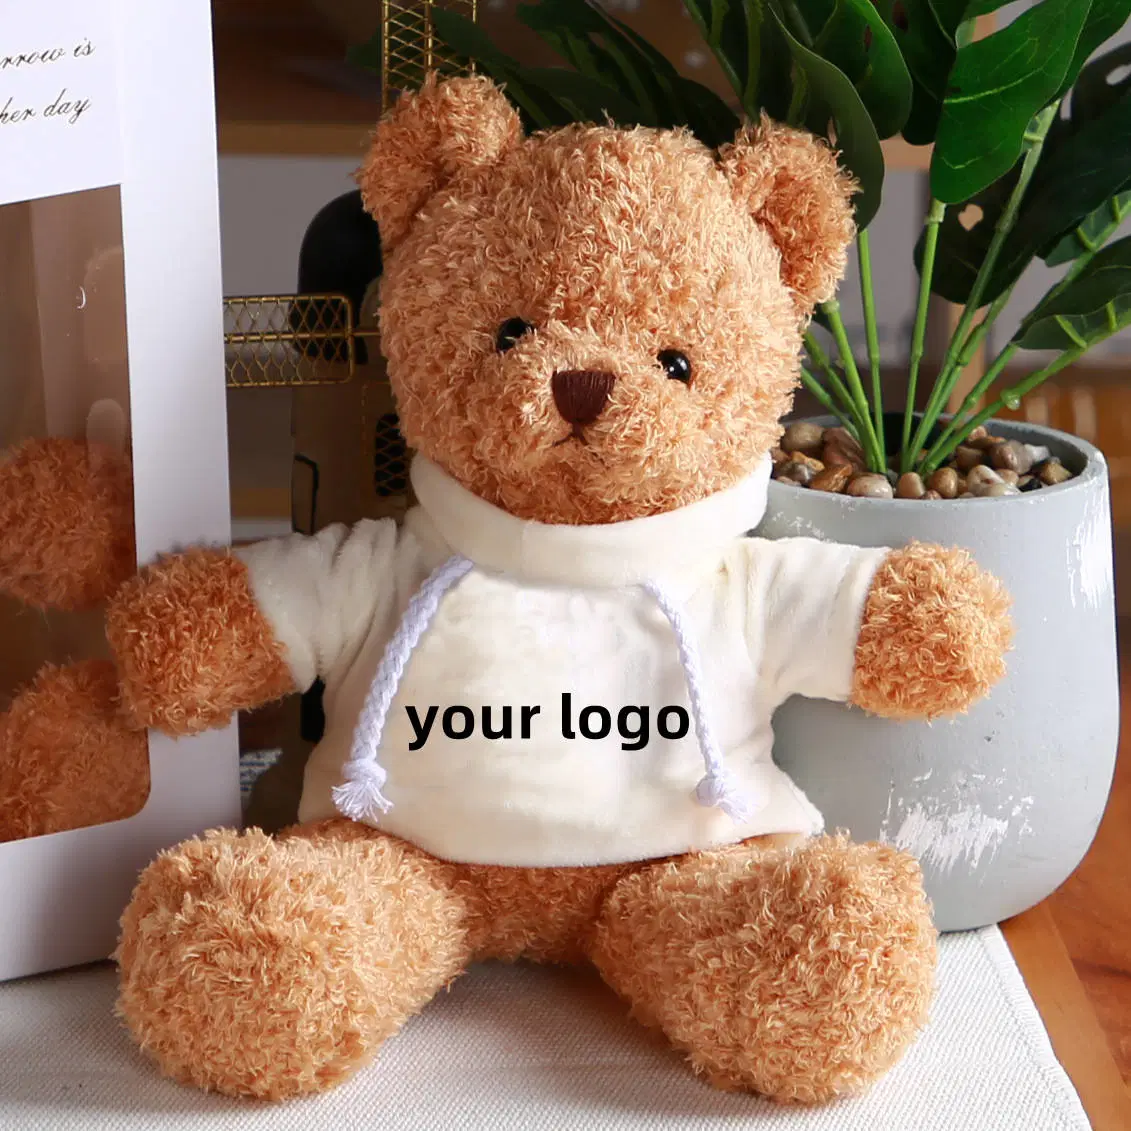 Hot Günstige Preis Valentines′ S Day Werbegeschenke hübsch gefüllt Bär Custom Logo Plüsch Teddybär mit T-Shirt